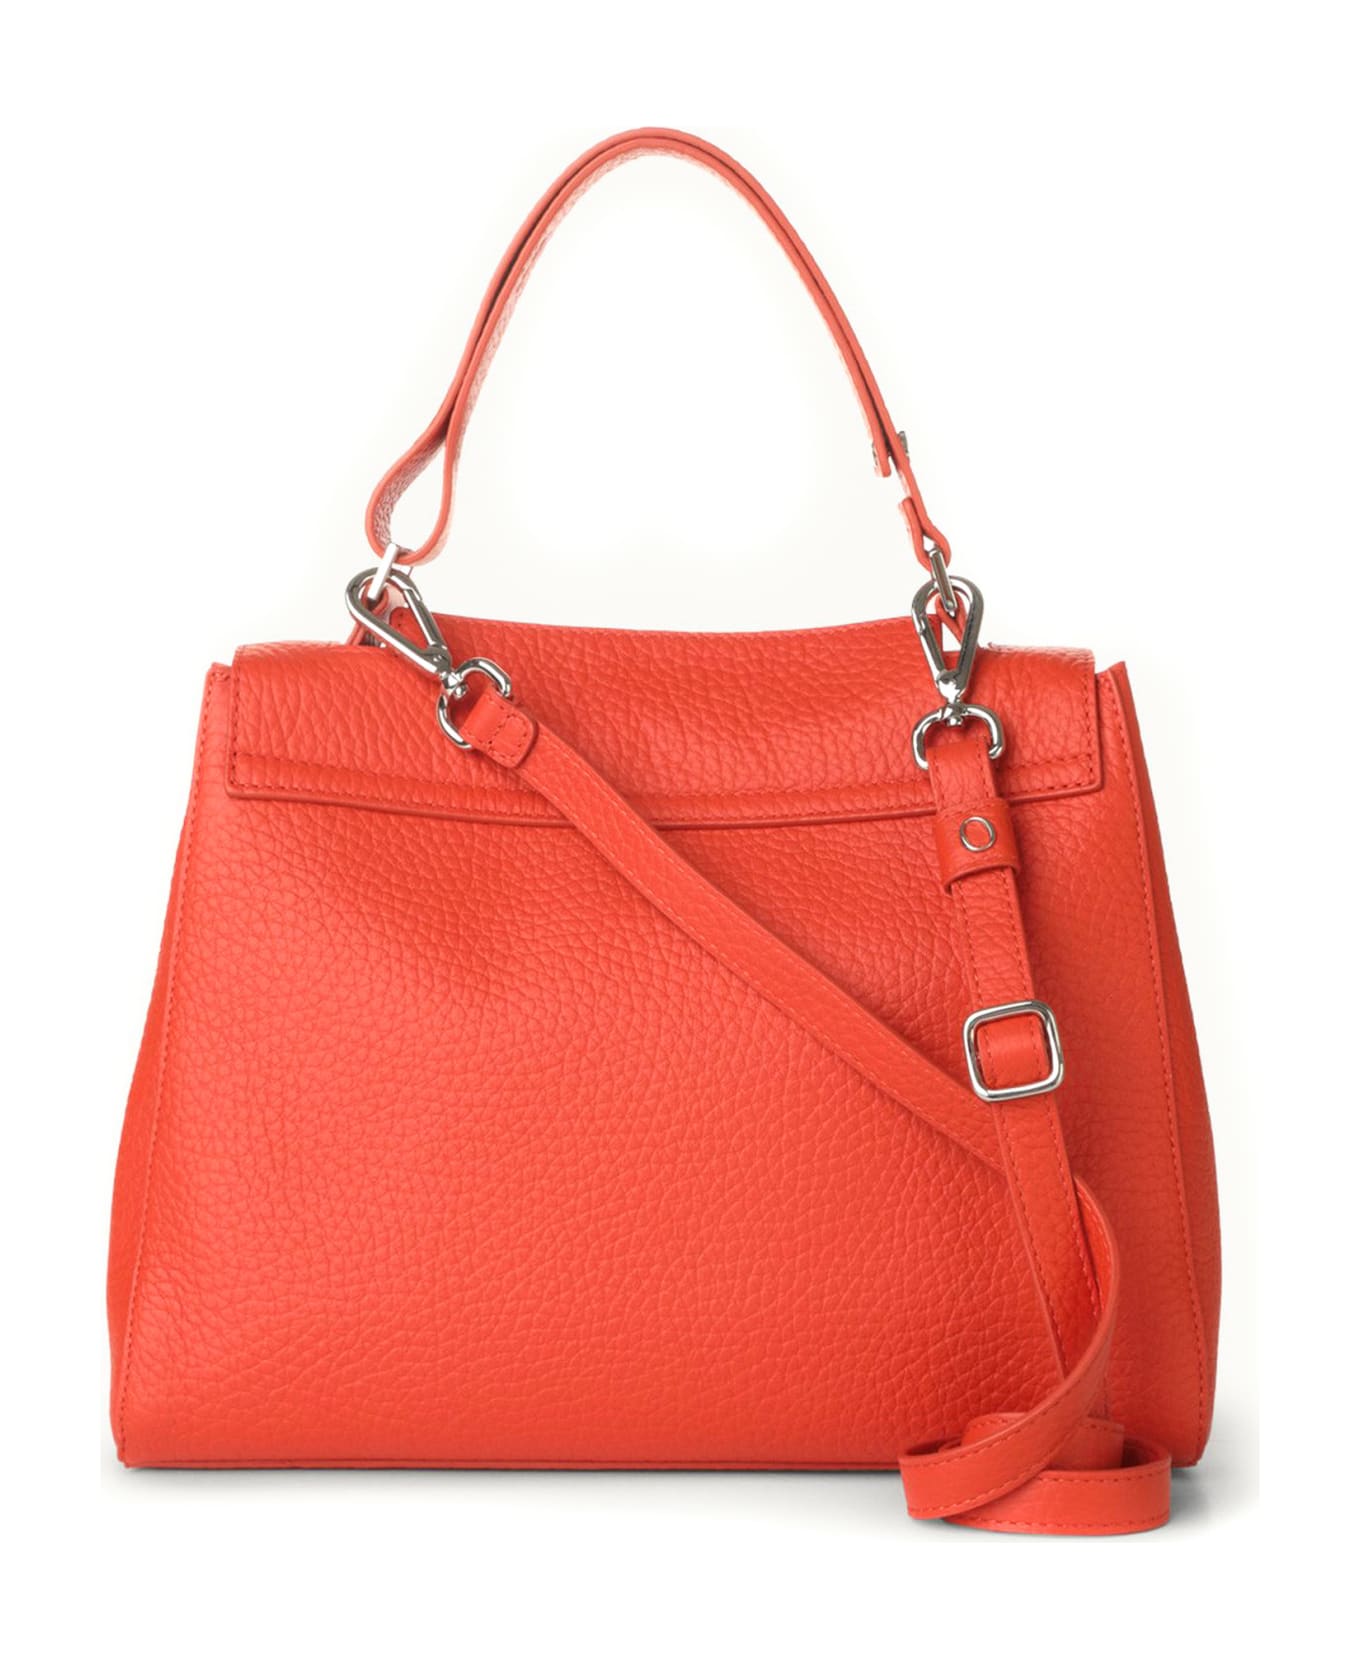 Orciani Sveva Soft Medium Leather Shoulder Bag - Red